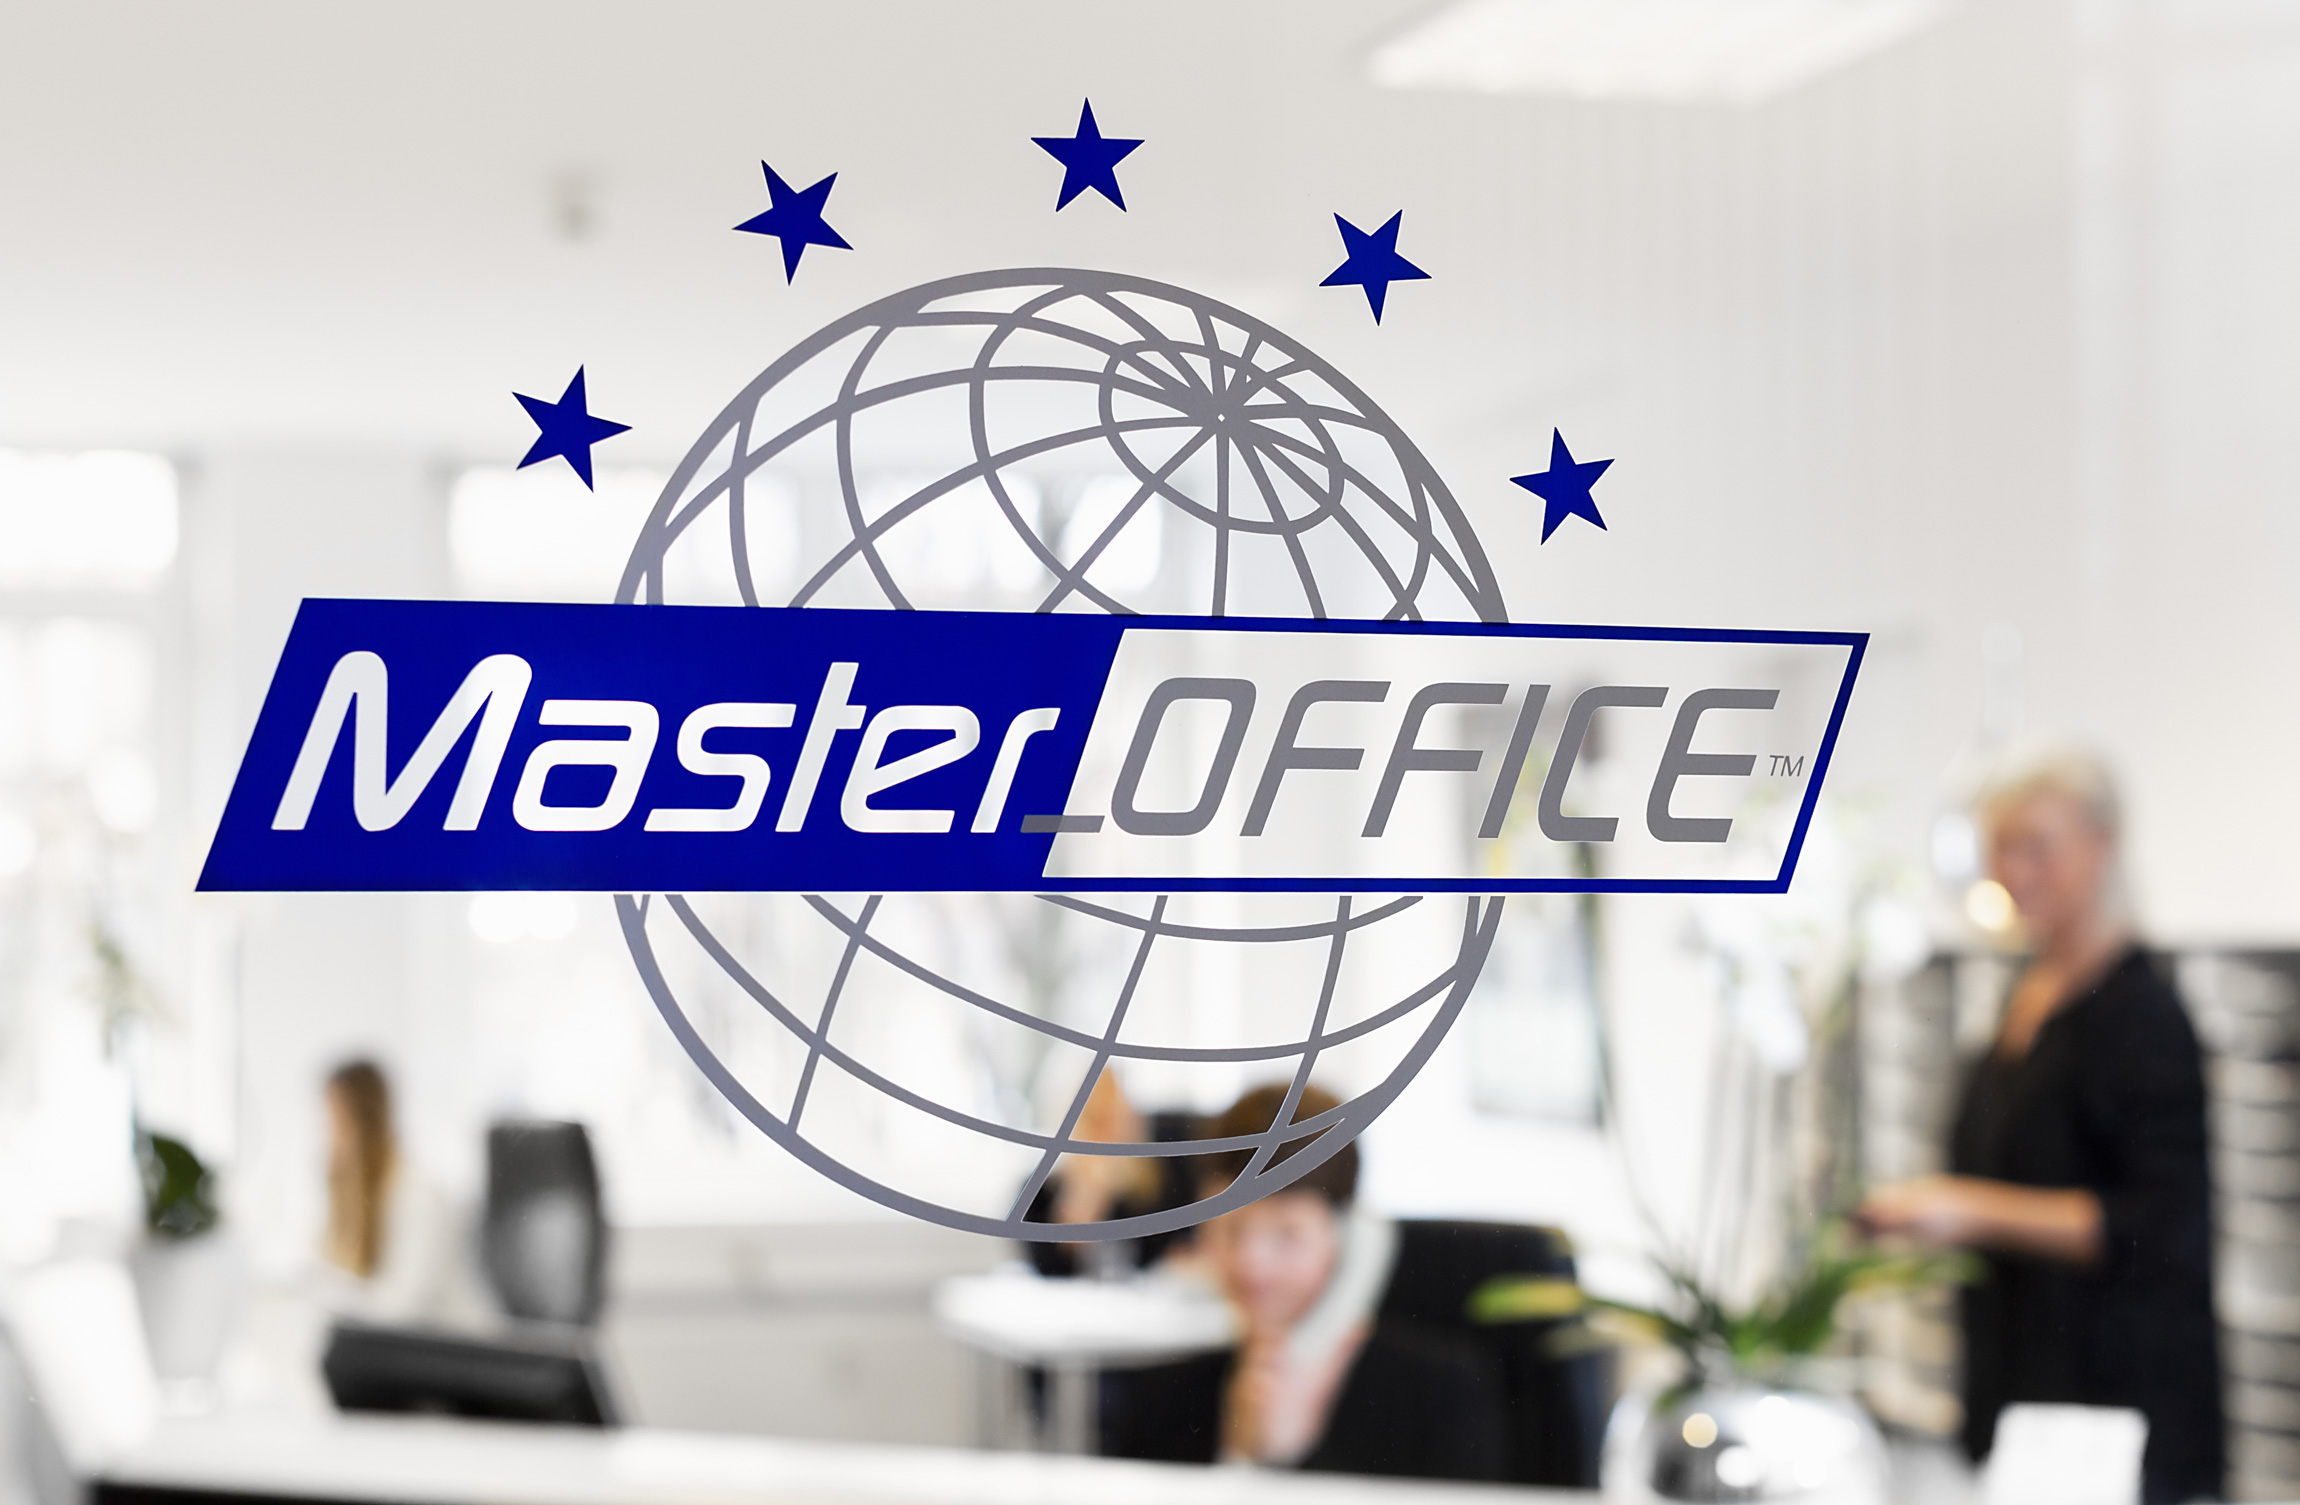 Master Office heißt Sie herzlich Willkommen in unserem Business Center in Hamburg Fuhlsbüttel